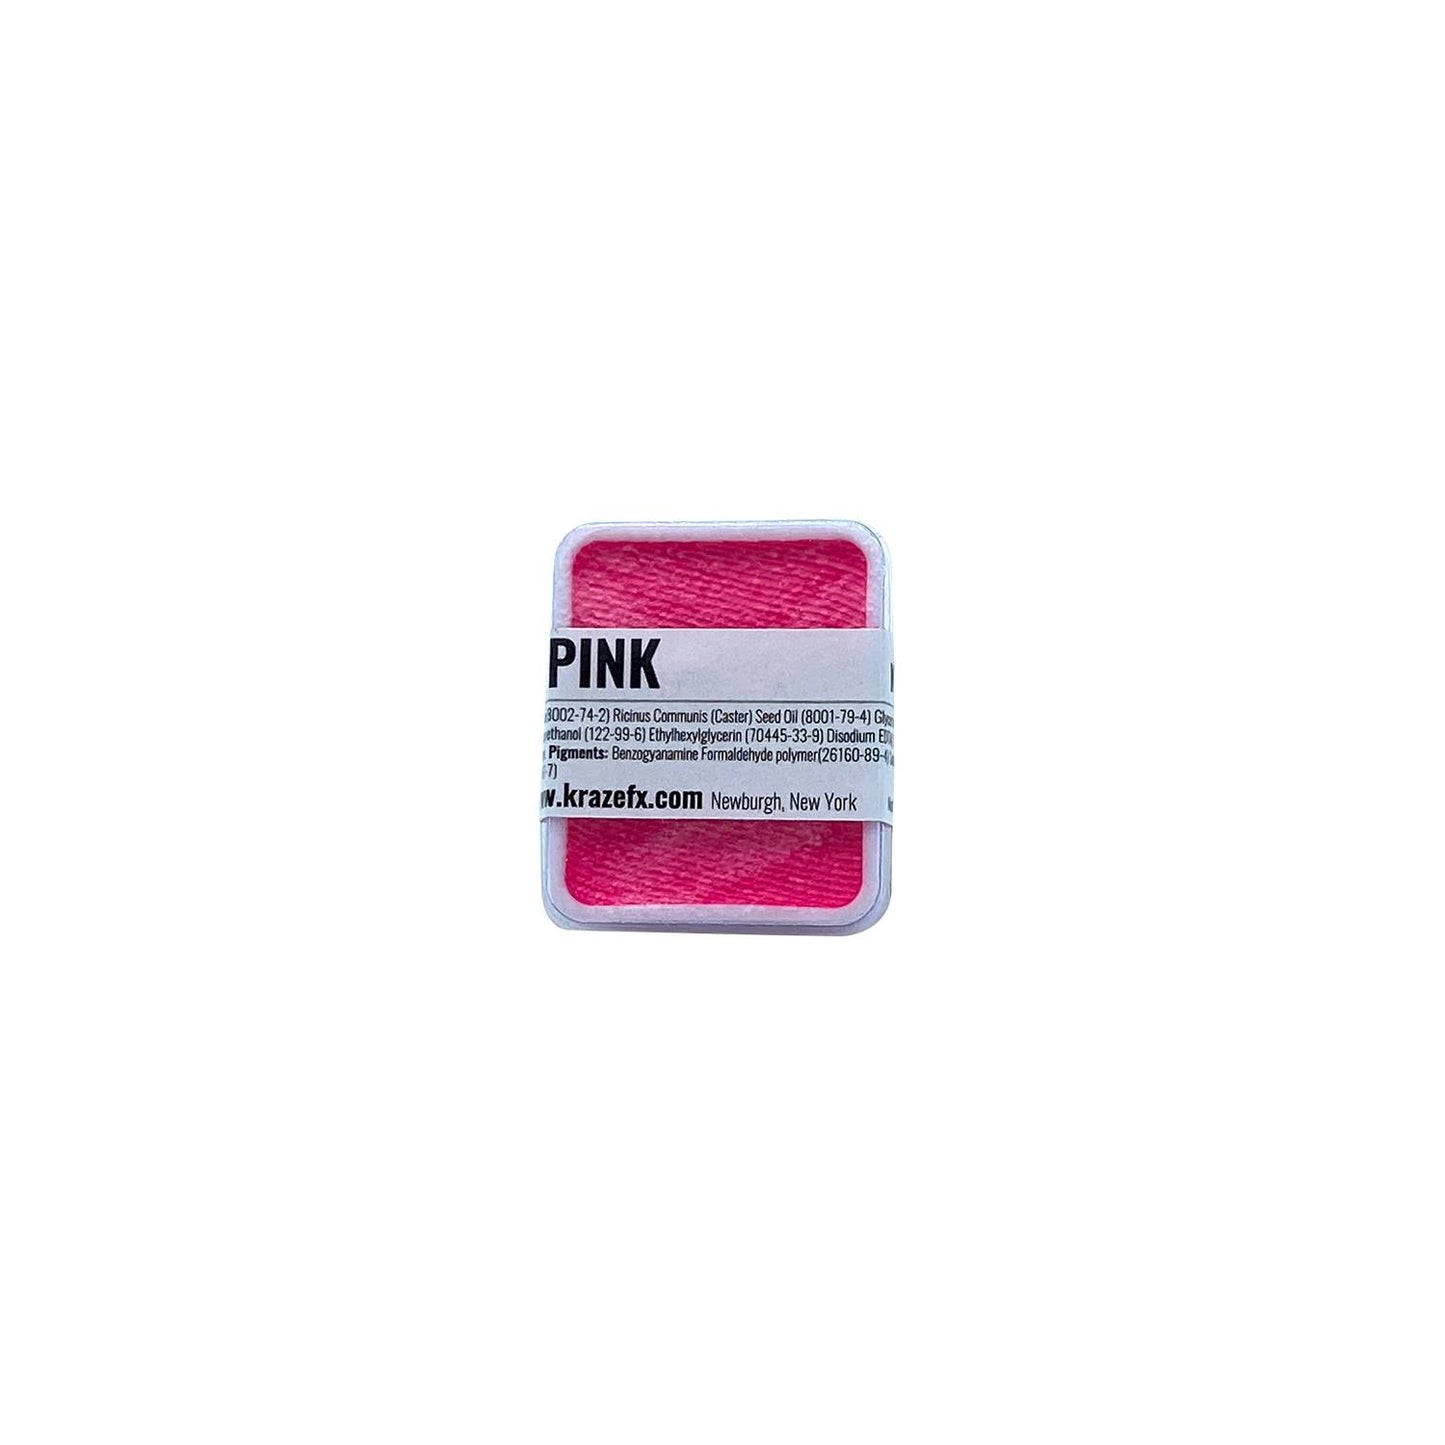 Kraze FX Face Paint Refill - Neon Pink (6 gm)